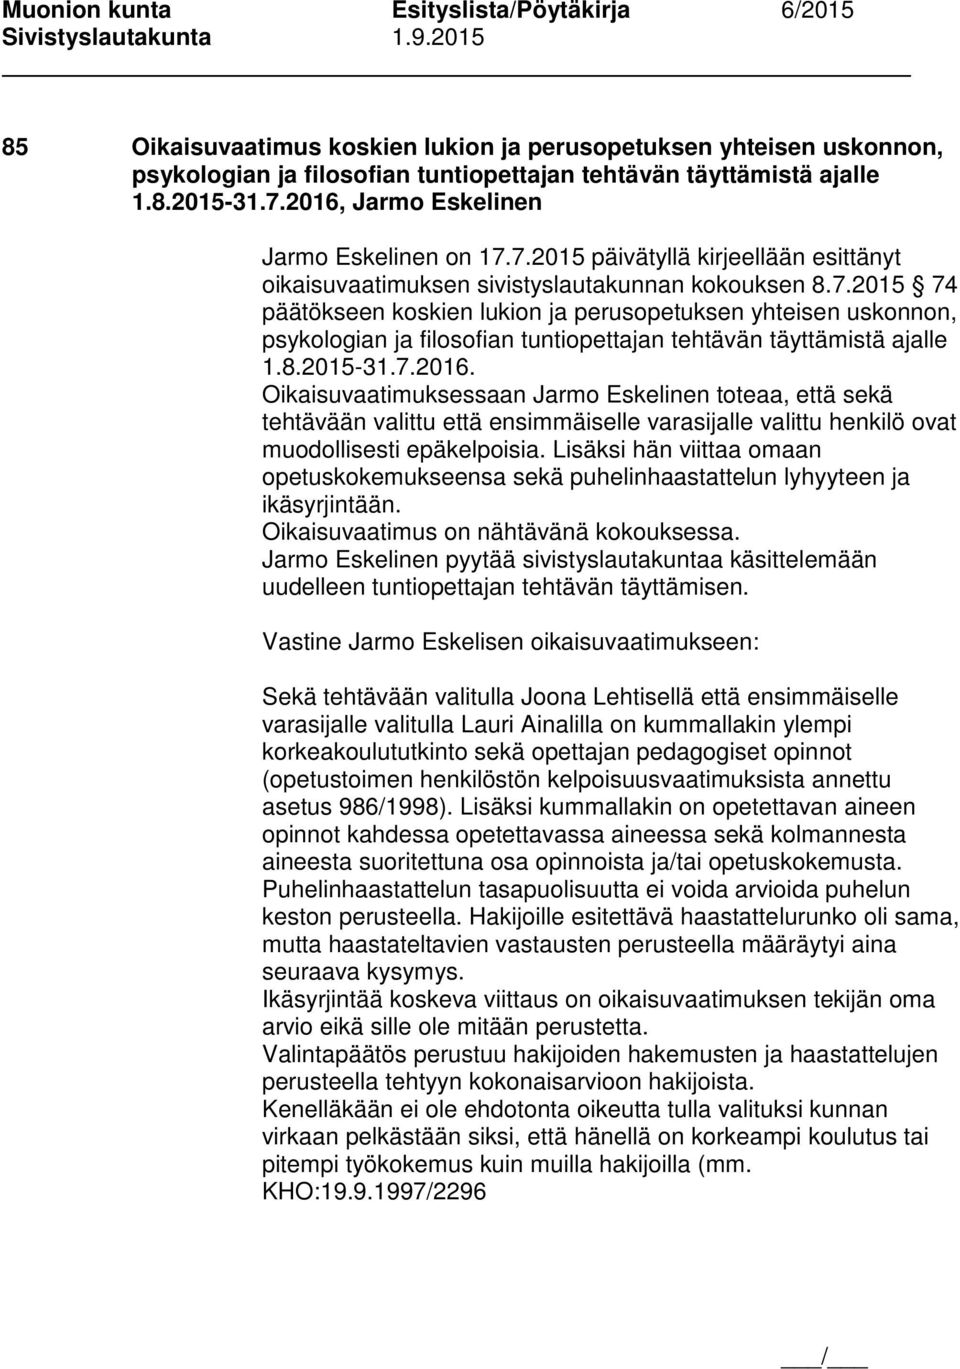 8.2015-31.7.2016. Oikaisuvaatimuksessaan Jarmo Eskelinen toteaa, että sekä tehtävään valittu että ensimmäiselle varasijalle valittu henkilö ovat muodollisesti epäkelpoisia.